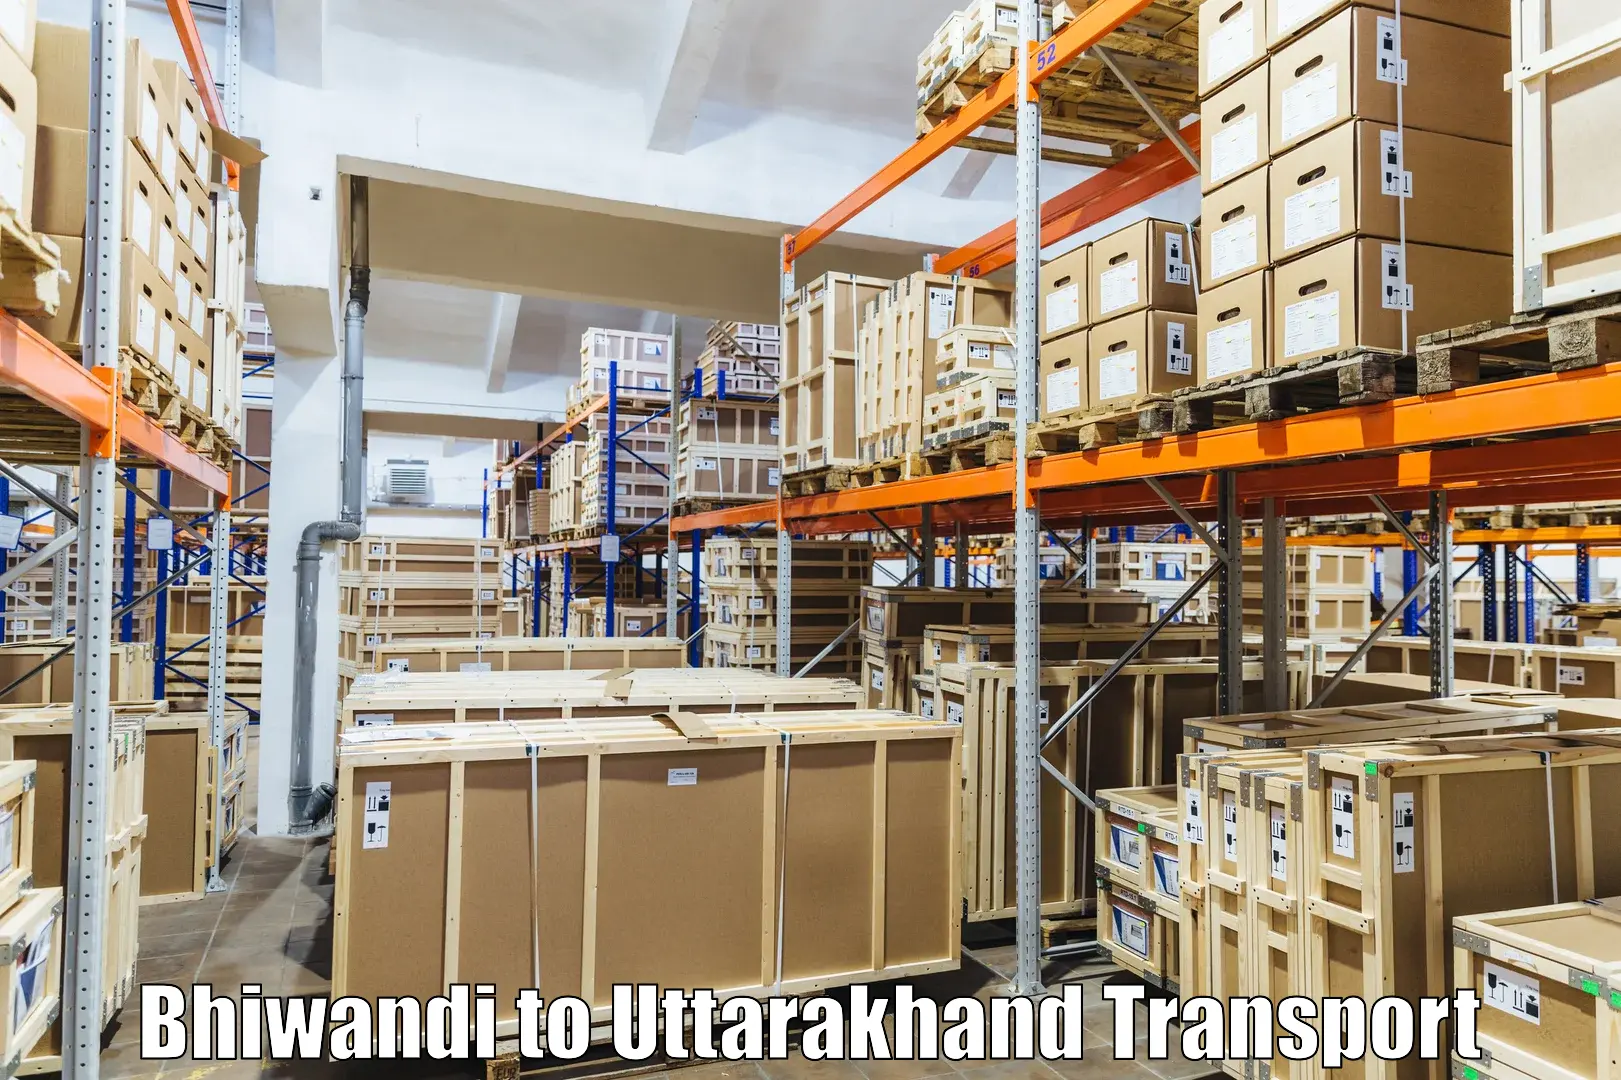 Lorry transport service Bhiwandi to Rishikesh